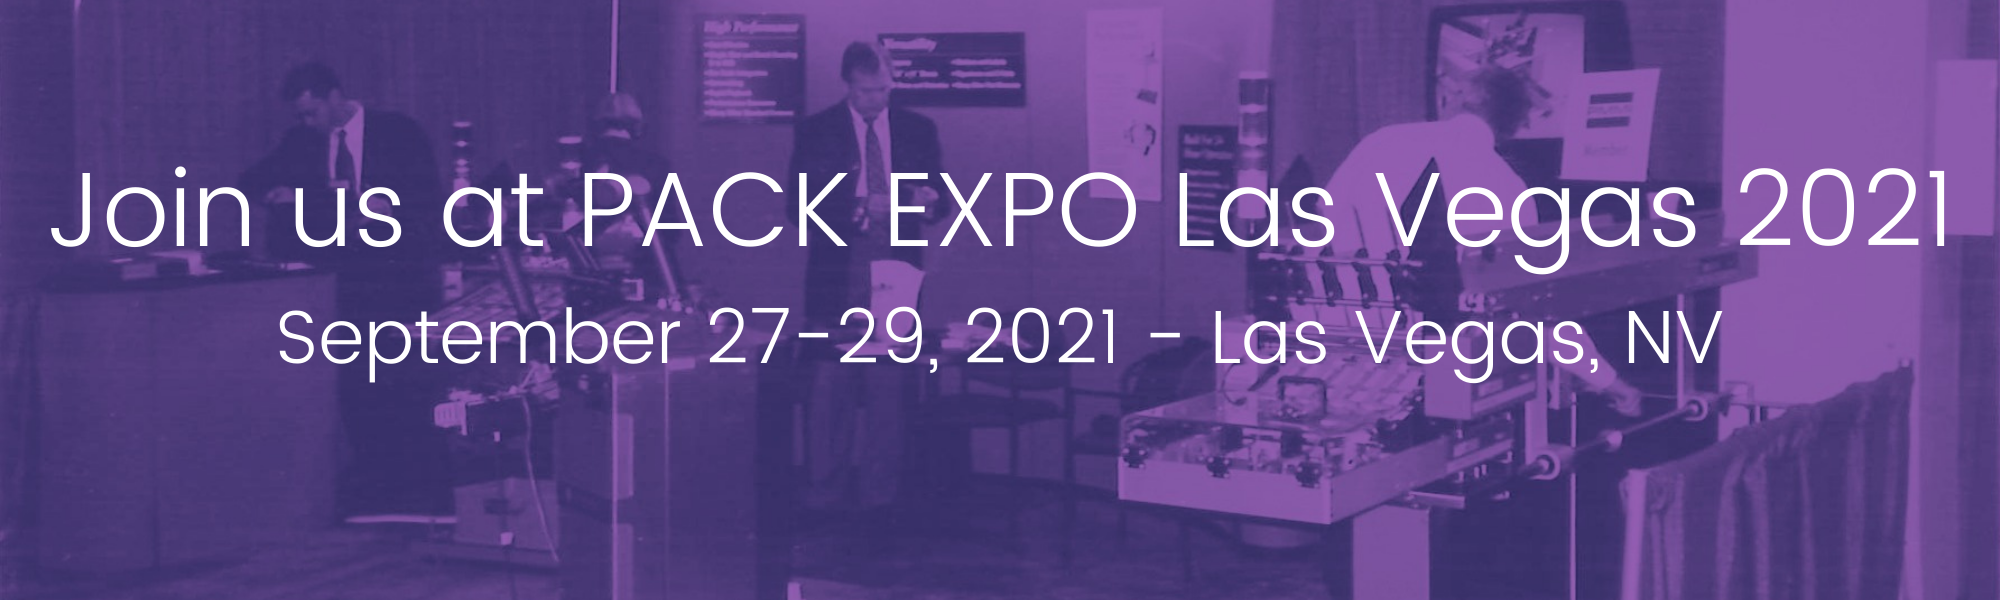 Pack Expo 2021 Blog Header